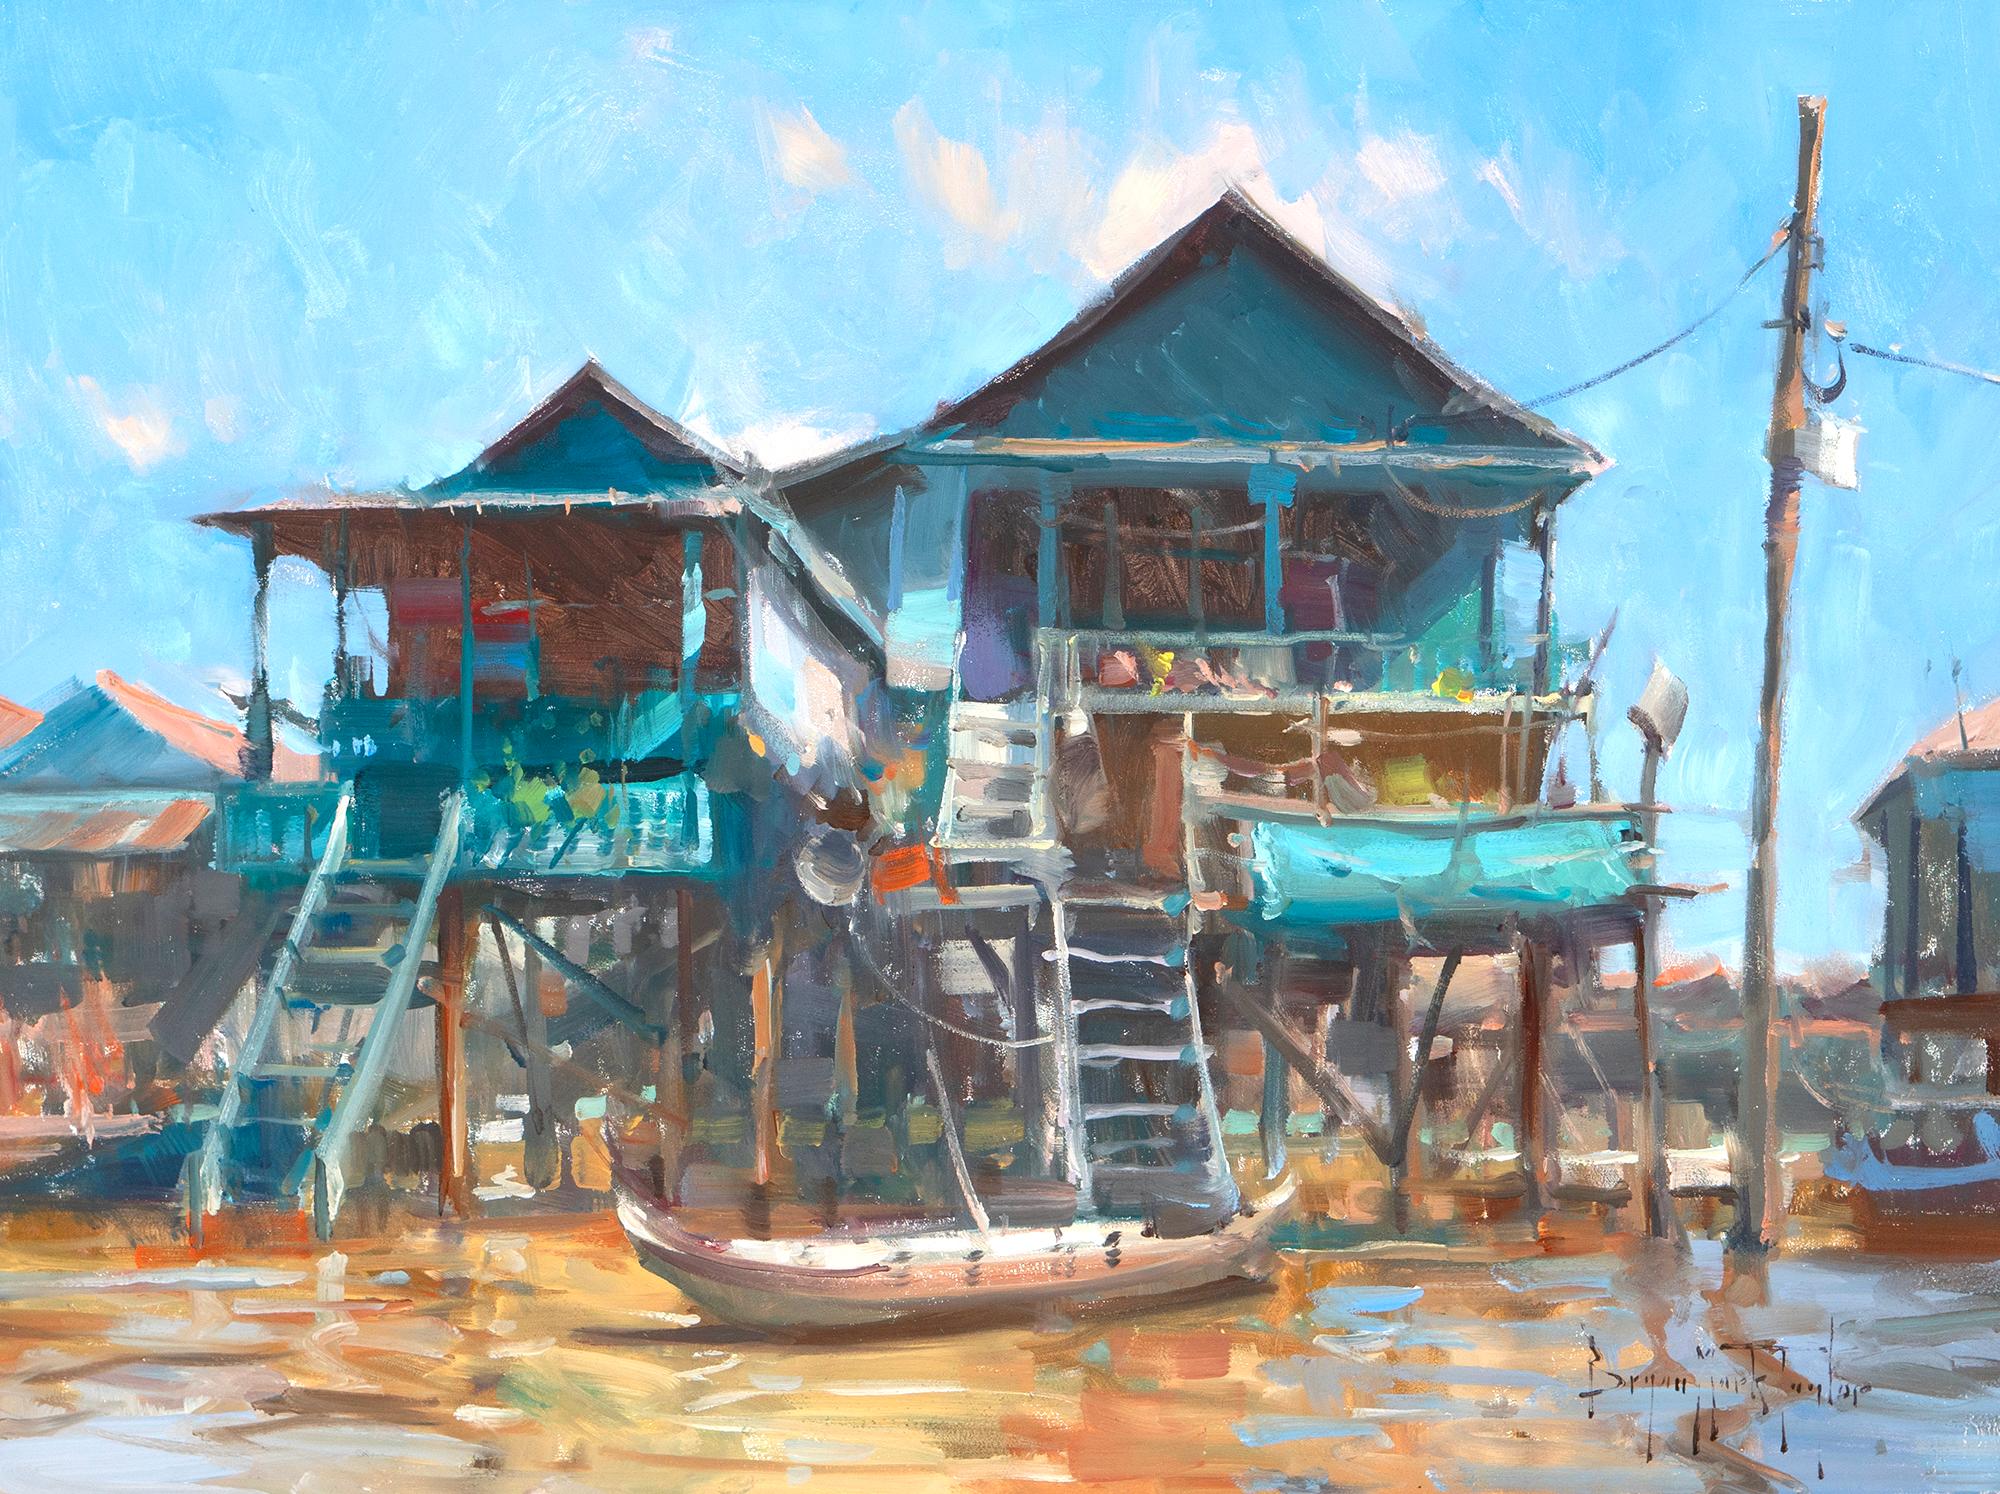 Bryan Mark Taylor Landscape Painting – "Schwimmende Stadt" Moderne impressionistische Szene in Kambodscha